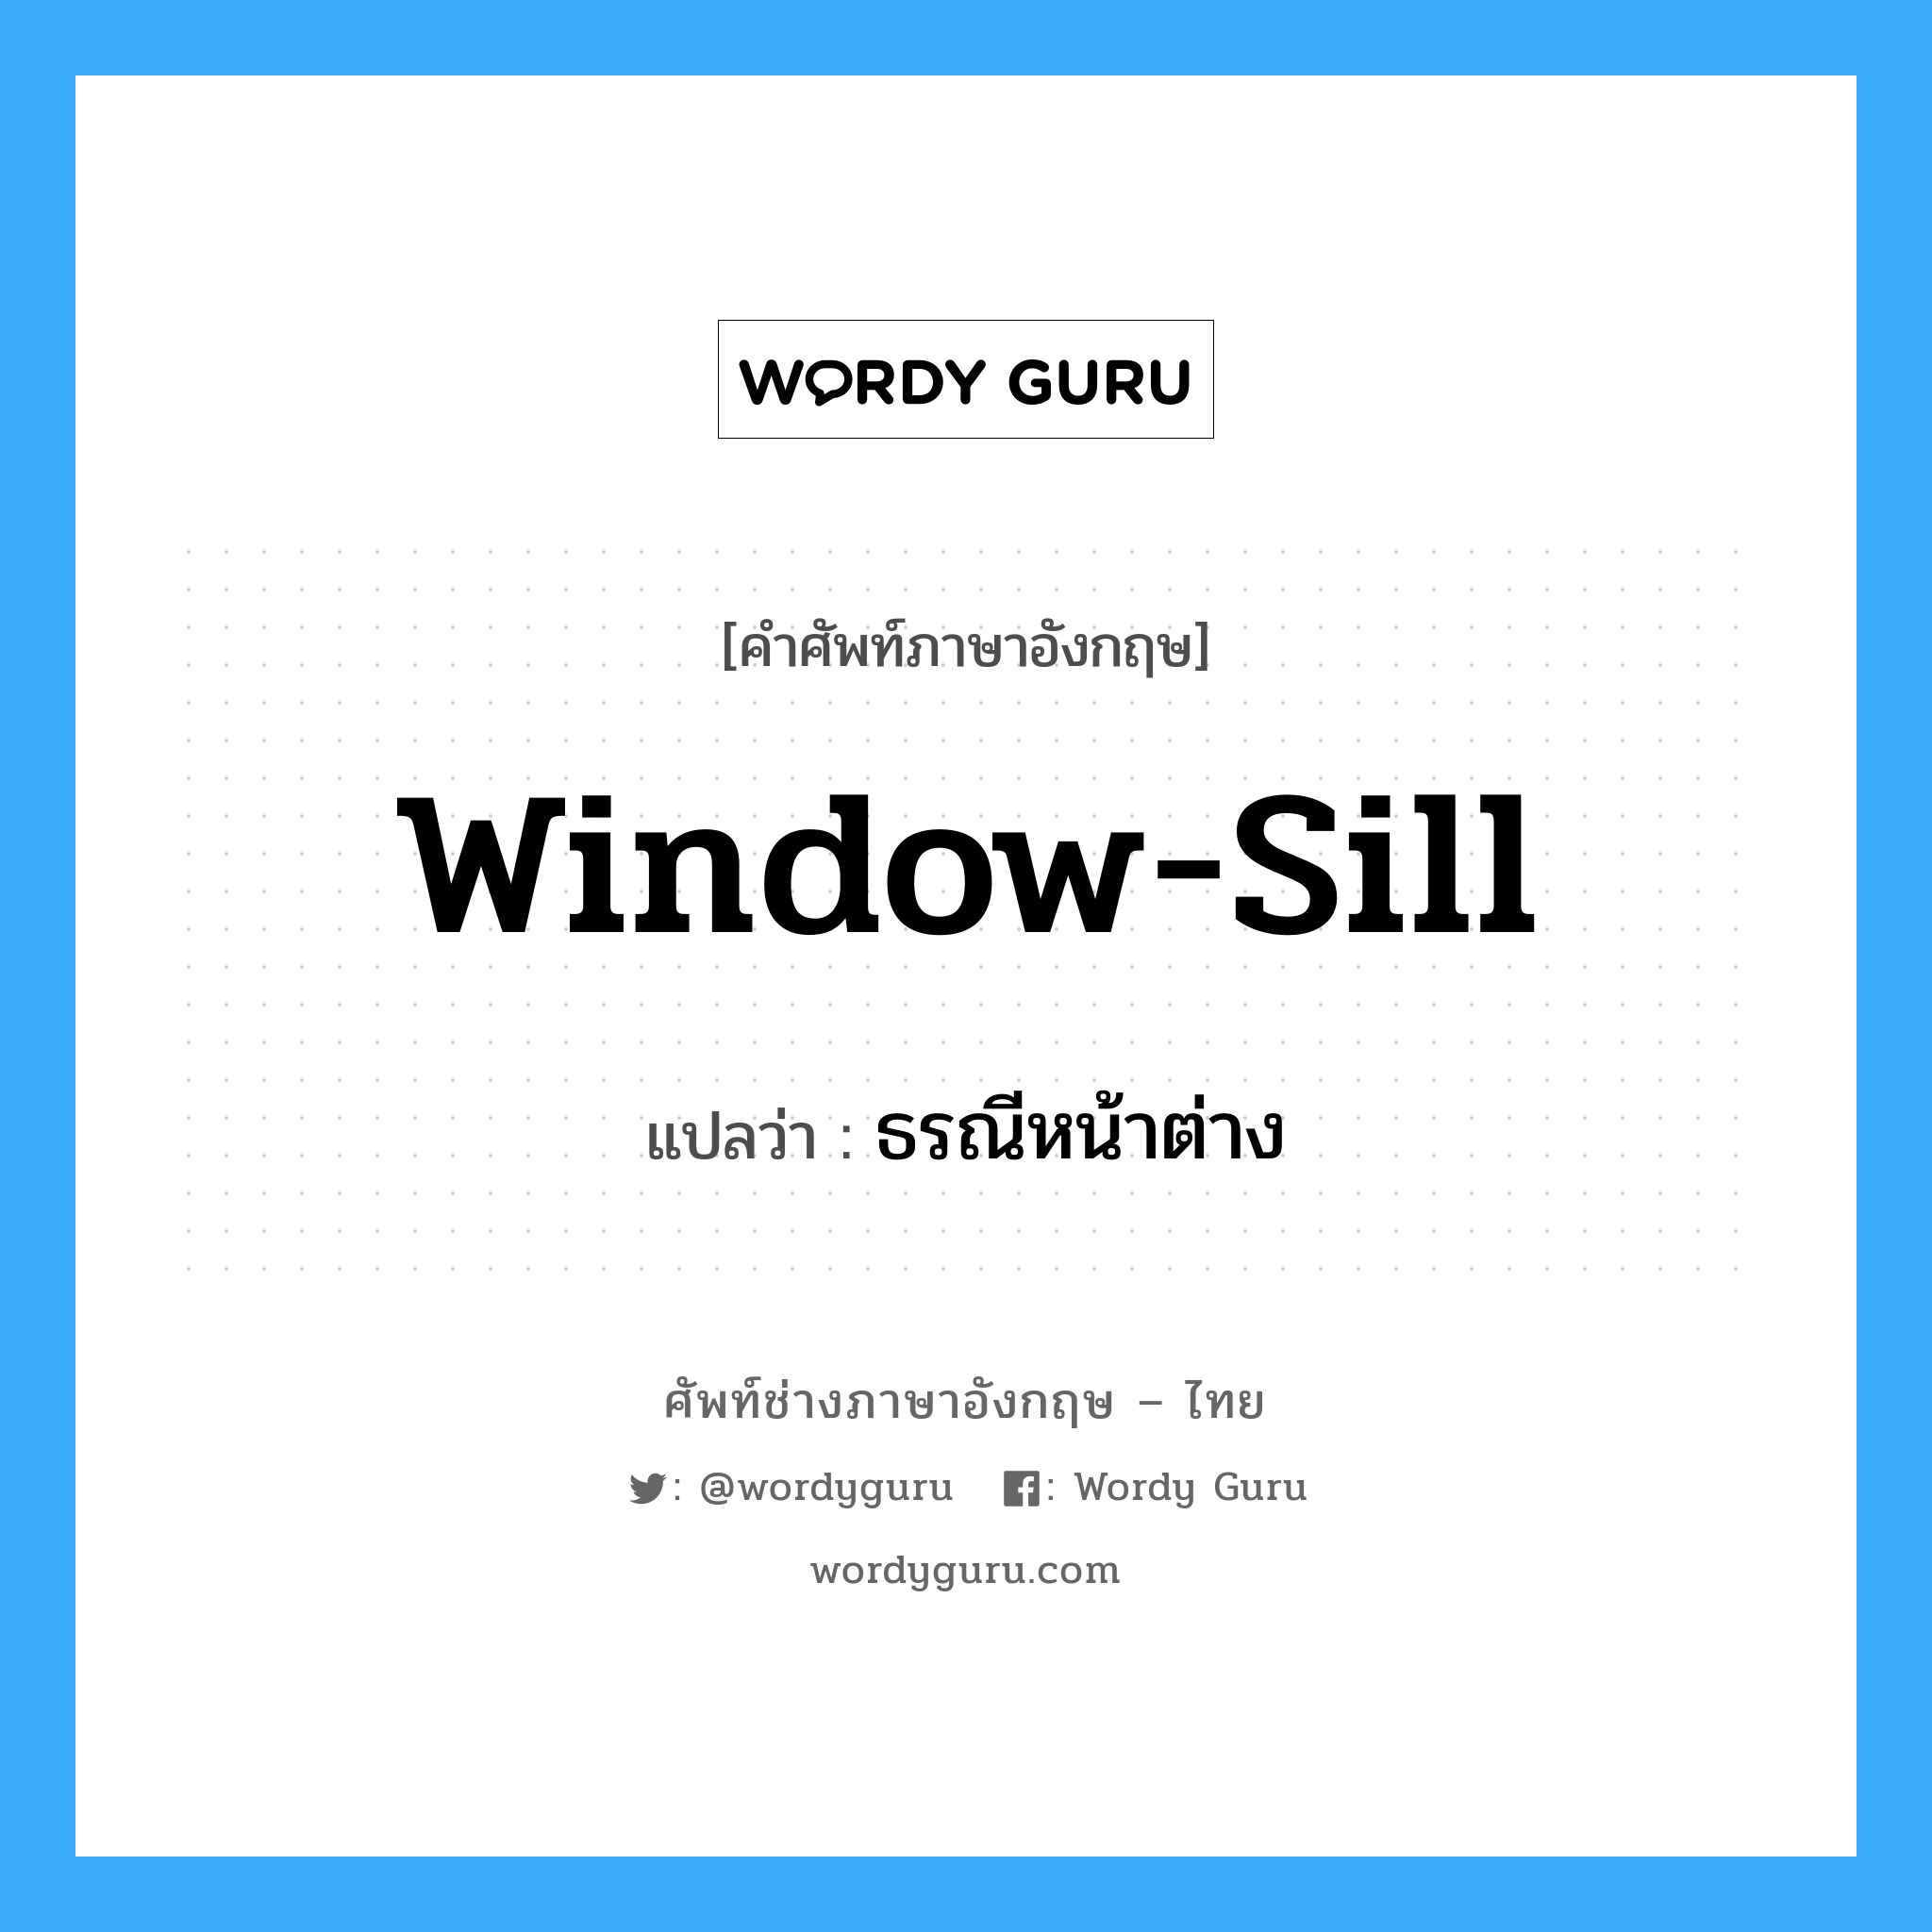 window-sill แปลว่า?, คำศัพท์ช่างภาษาอังกฤษ - ไทย window-sill คำศัพท์ภาษาอังกฤษ window-sill แปลว่า ธรณีหน้าต่าง